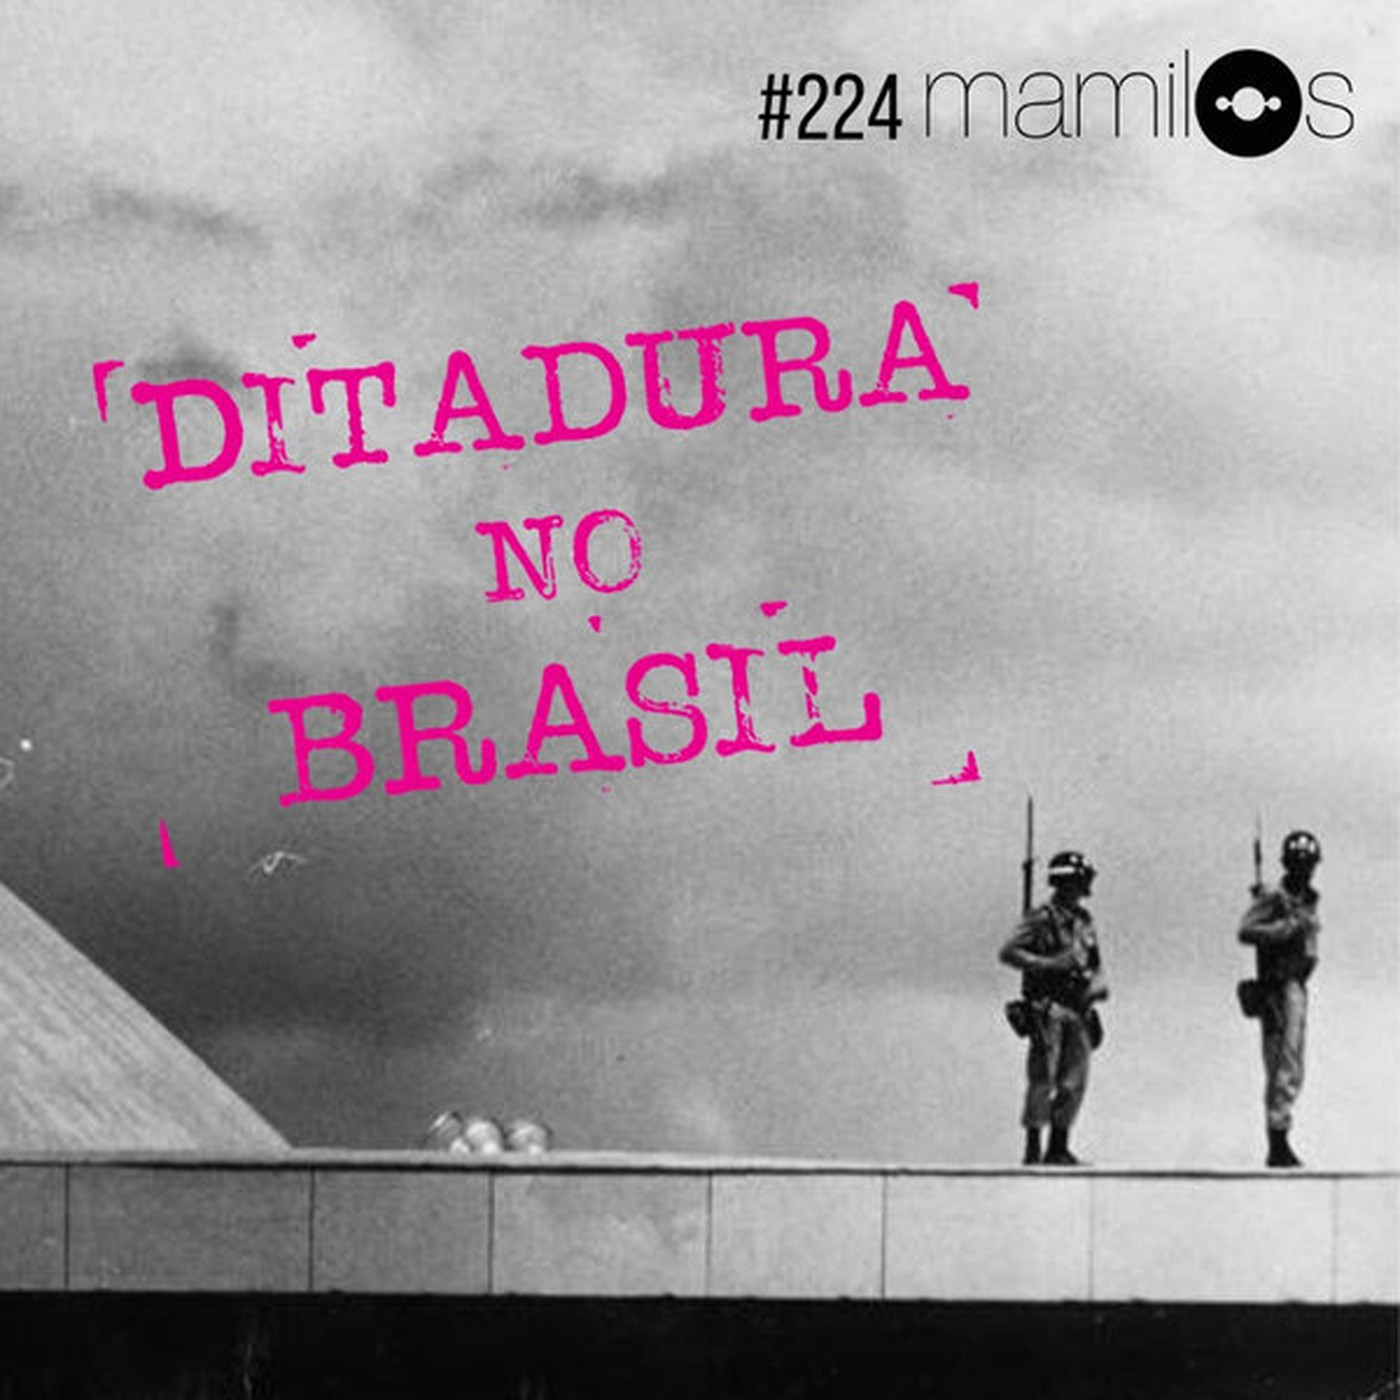 Ditadura no Brasil